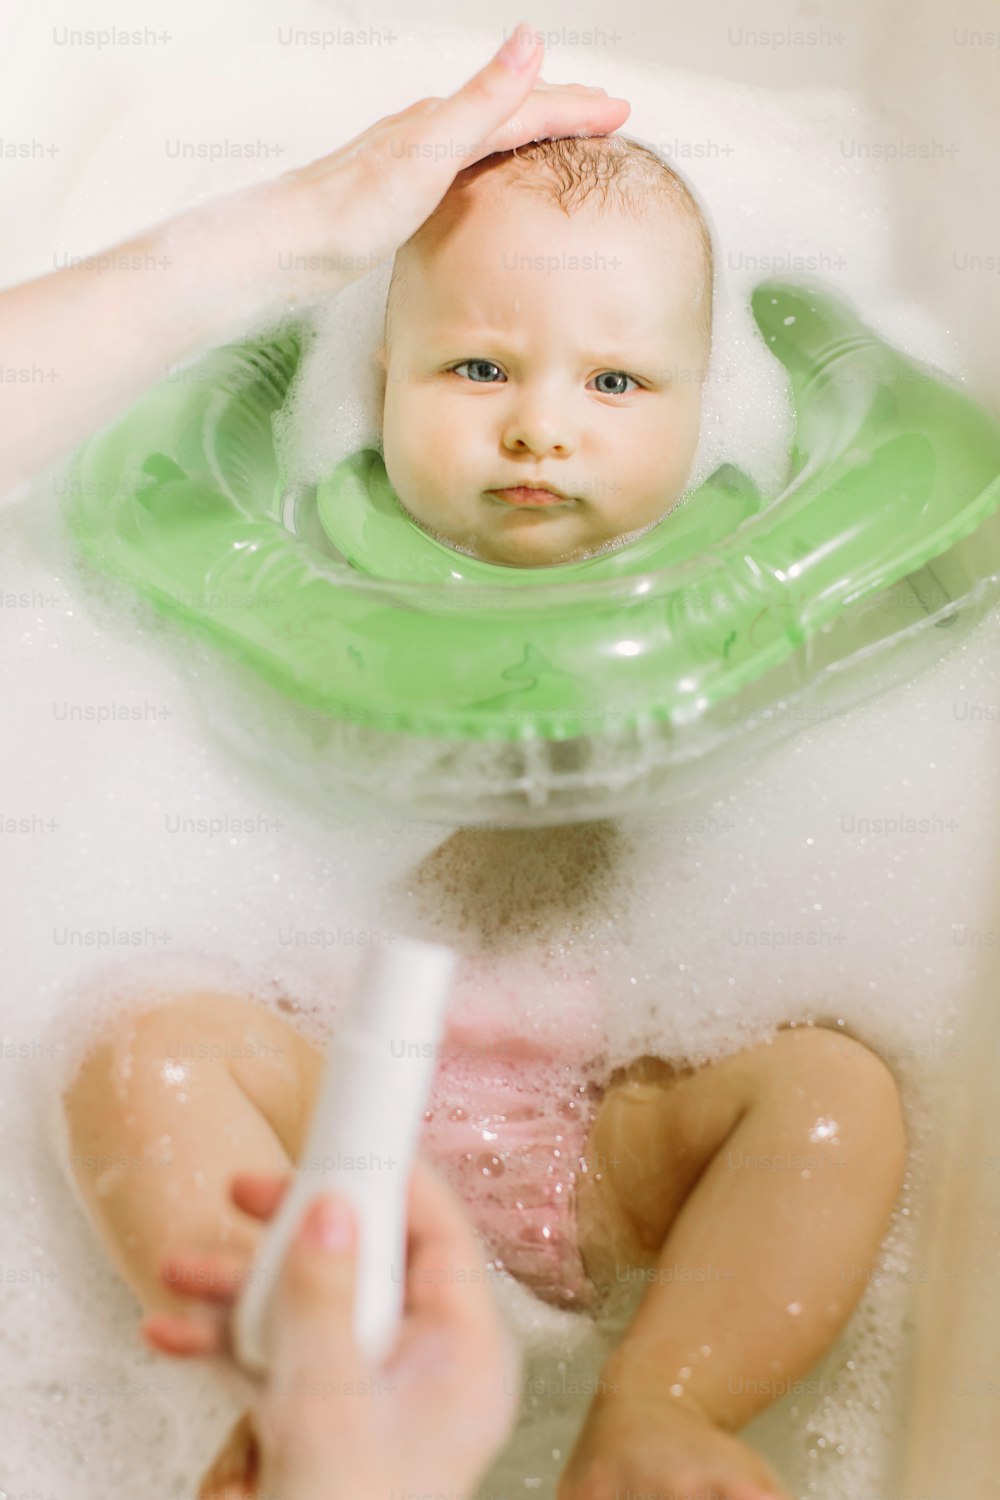 녹색 목 수영 반지로 수영하는 아기. 엄마는 튜브에서 샴푸를 짜낸다.